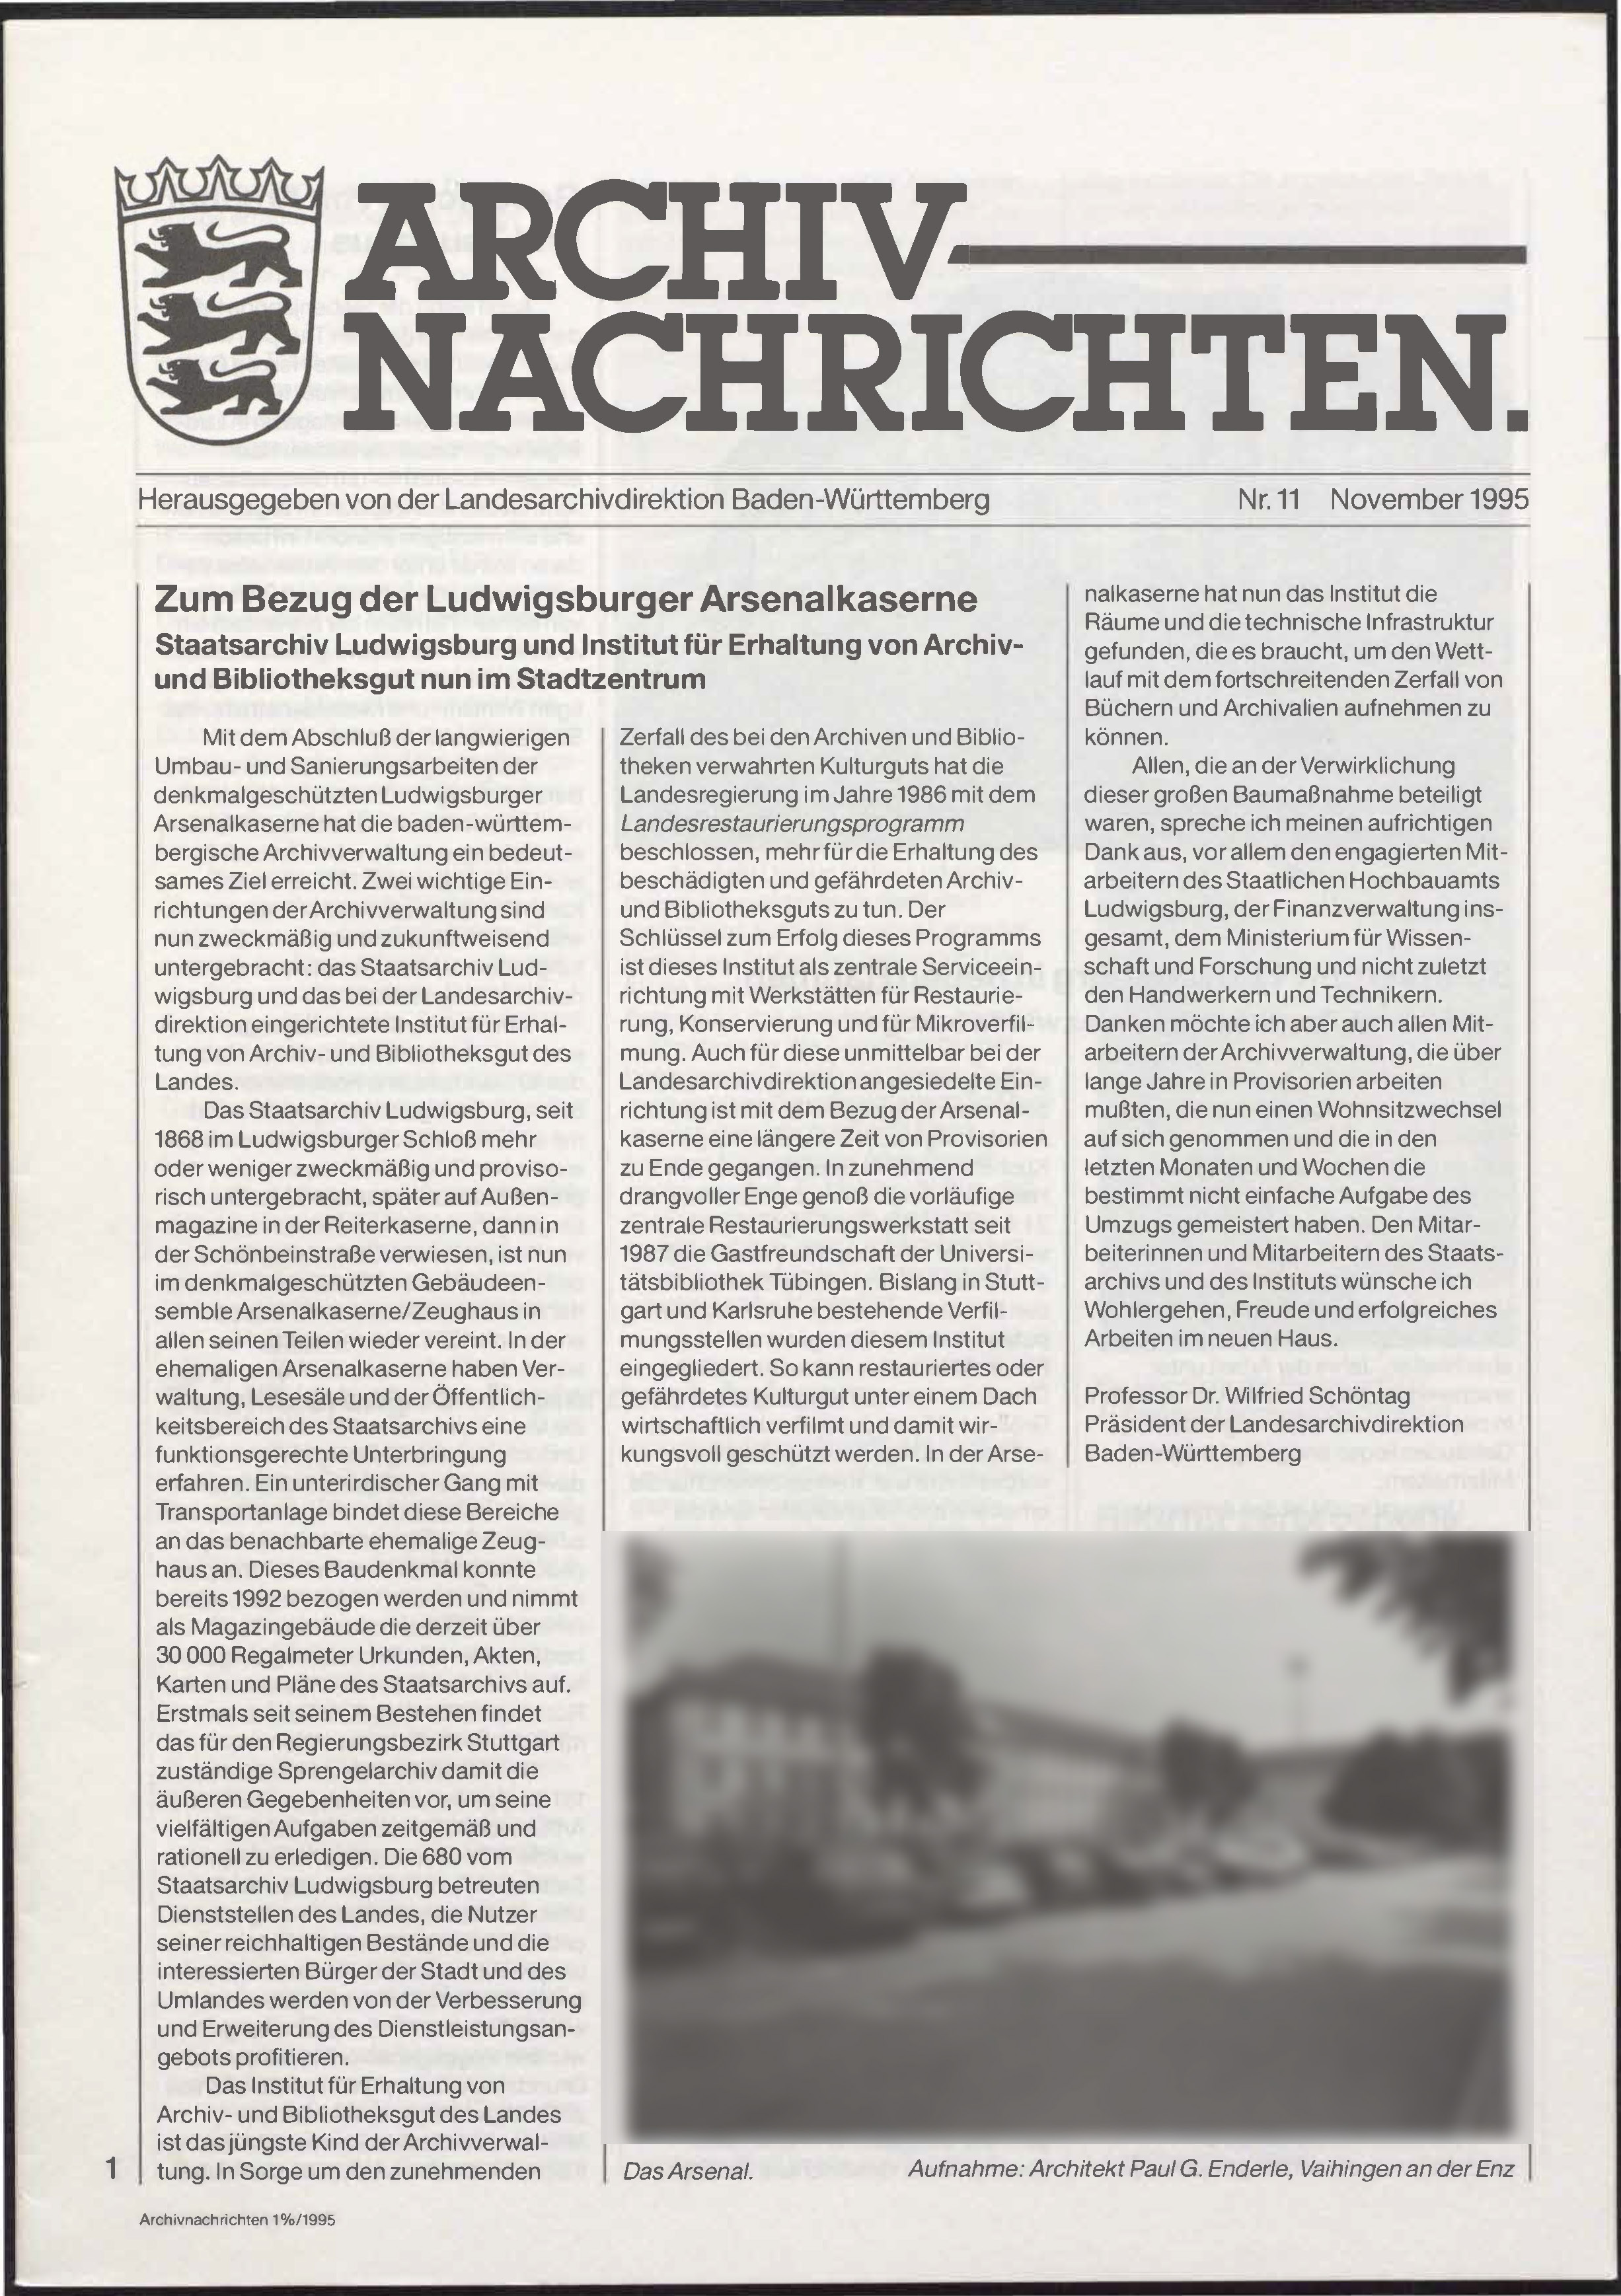                     Ansehen Nr. 11 (1995): Archivnachrichten
                